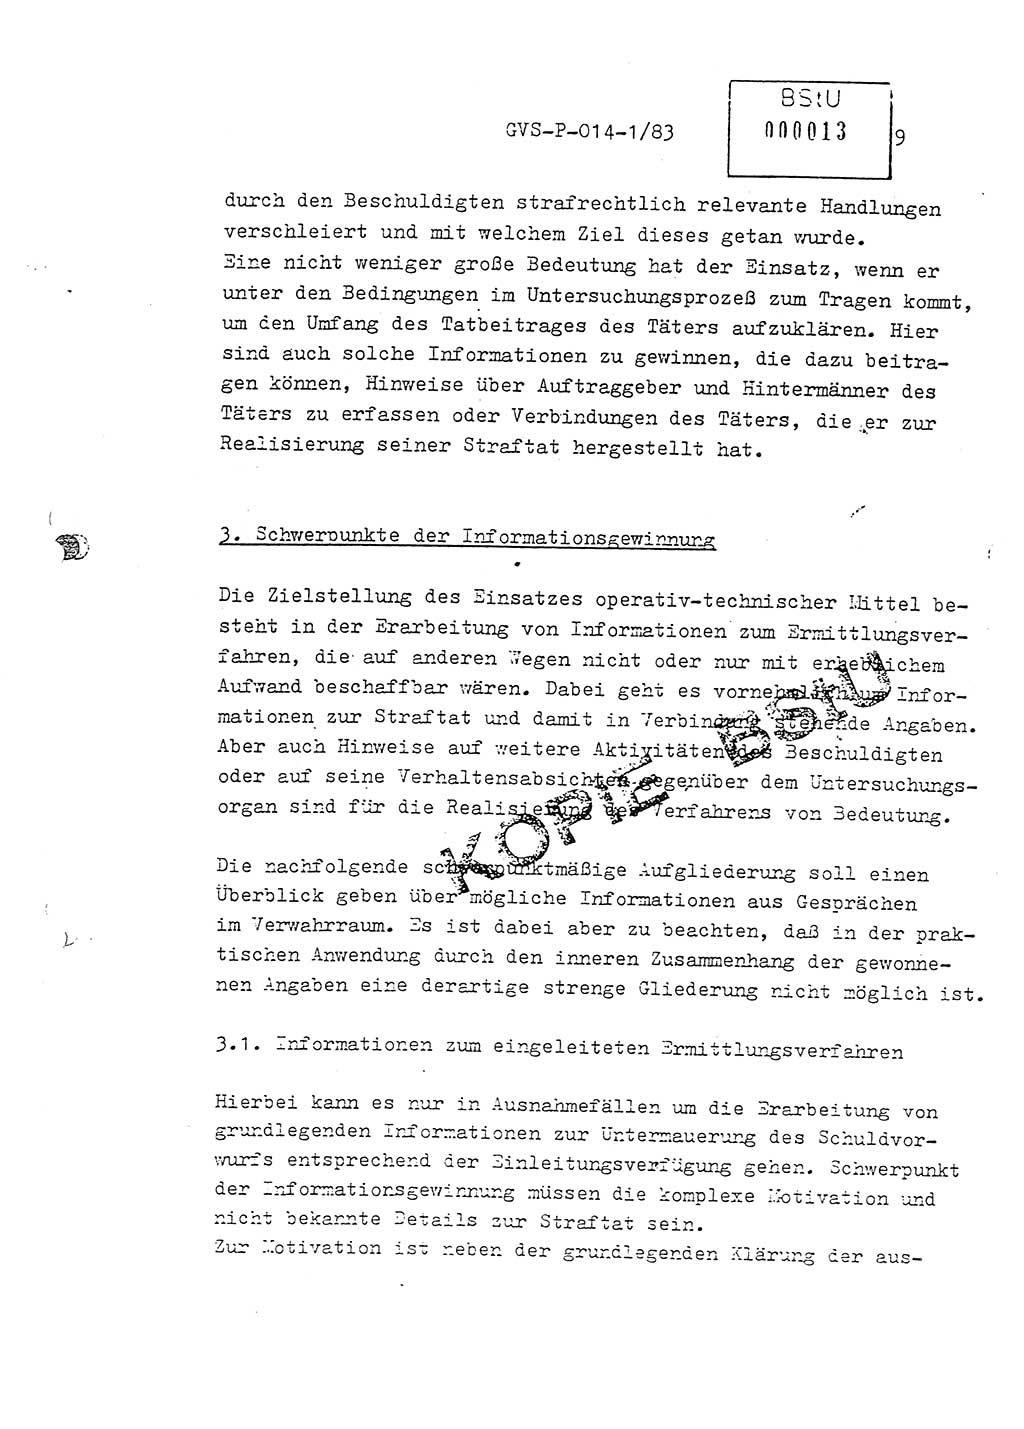 Fachschulabschlußarbeit Leutnant Dirk Autentrieb (HA Ⅸ/AKG), Ministerium für Staatssicherheit (MfS) [Deutsche Demokratische Republik (DDR)], Hauptabteilung (HA) Ⅸ, Geheime Verschlußsache (GVS) P-014-1/83, Berlin 1983, Blatt 9 (FS-Abschl.-Arb. MfS DDR HA Ⅸ GVS P-014-1/83 1983, Bl. 9)